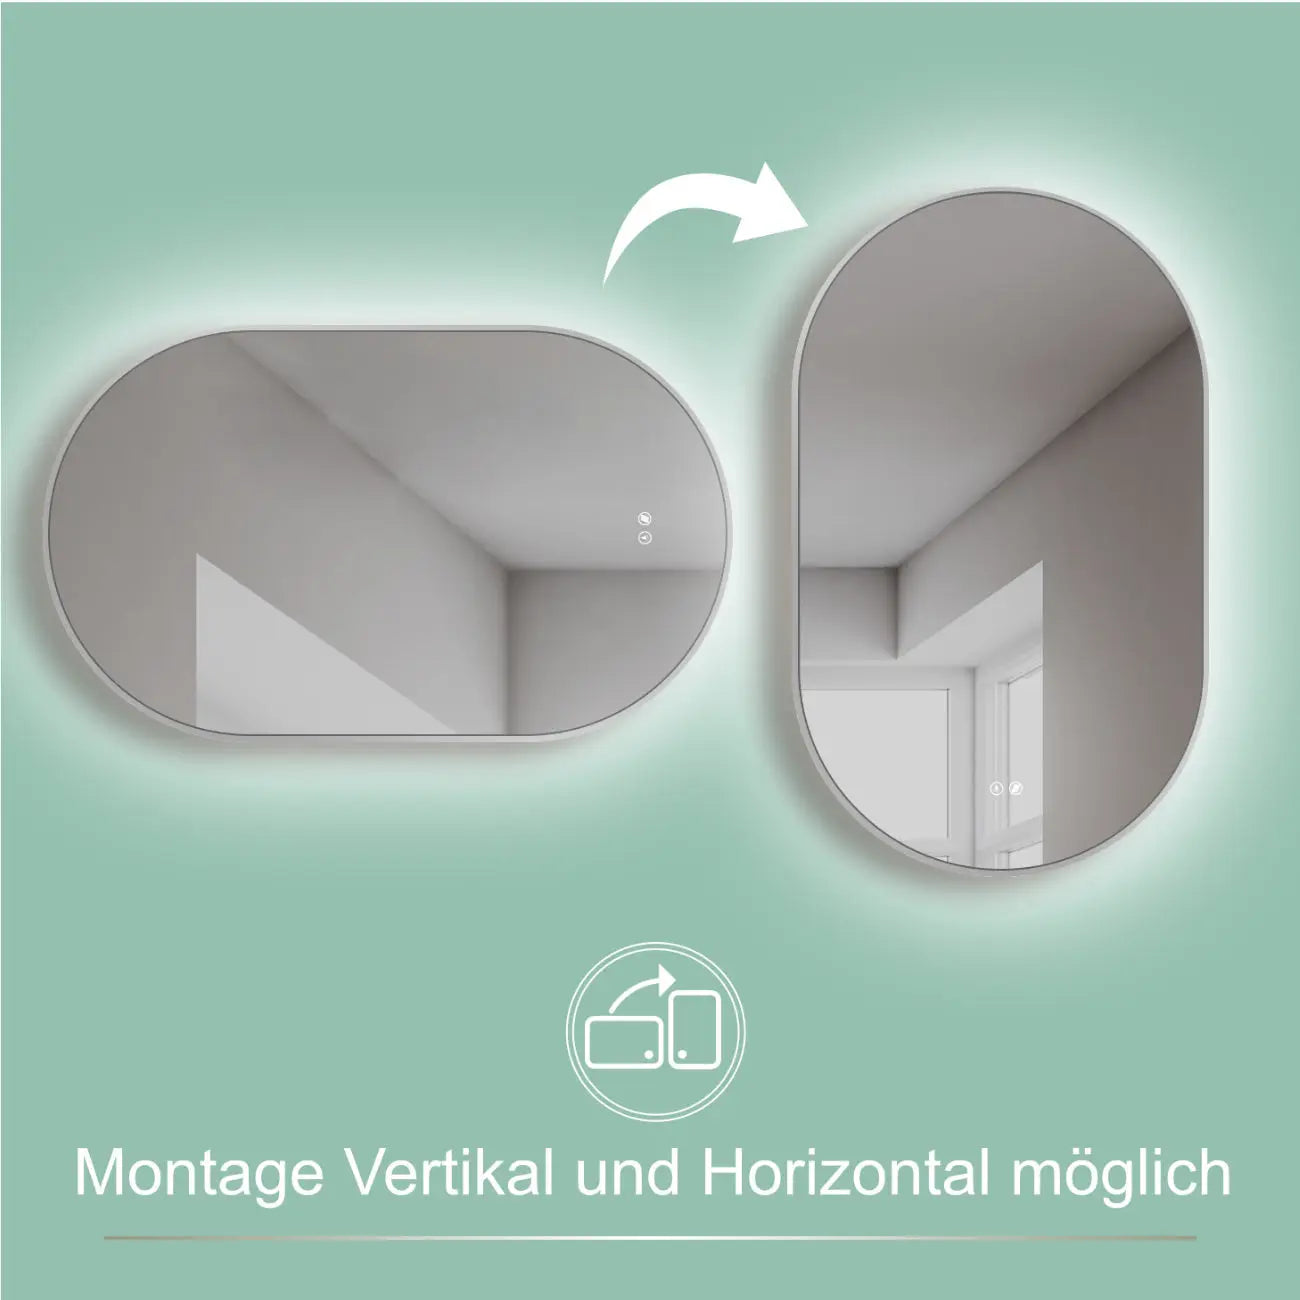 ANTIBESCHLAG LED Badspiegel oval mit Weiß RAHMEN, Lichtwechsel - HOKO-Style